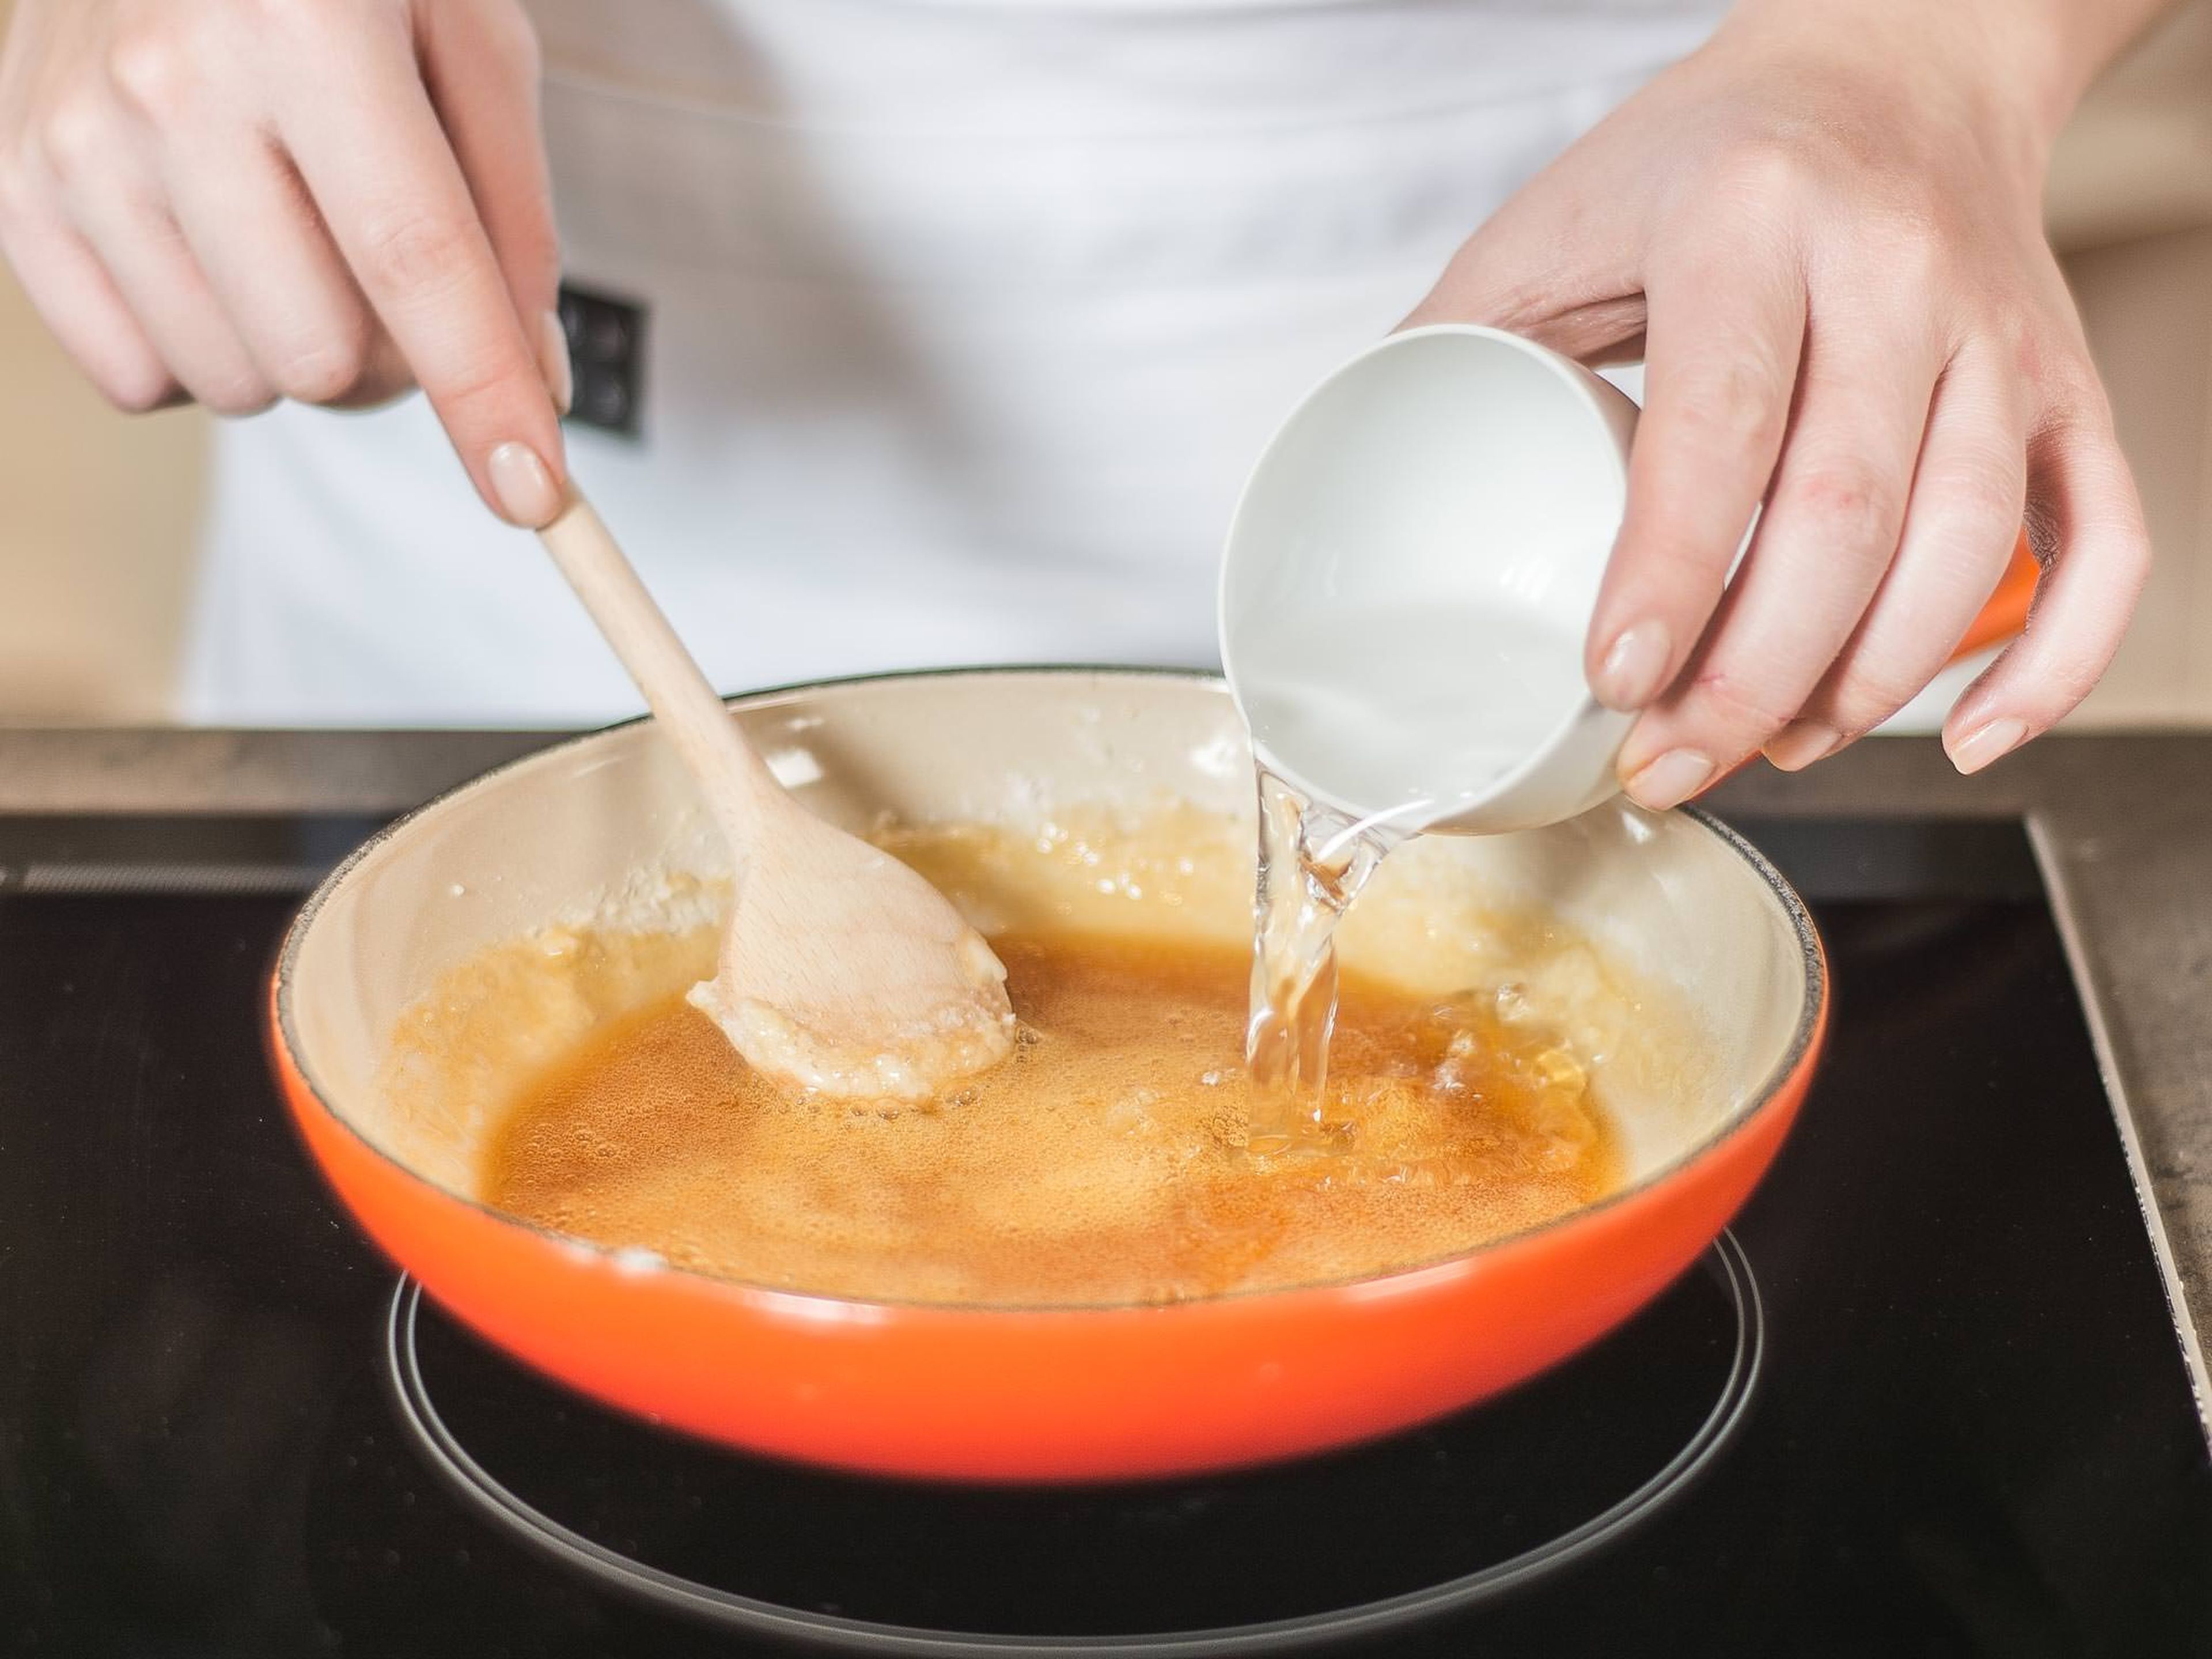 Vor dem Servieren den restlichen Zucker in einer kleinen Pfanne karamellisieren lassen. Eine Prise Salz hinzugeben, mit Wasser aufgießen und zu einer Soße einkochen lassen. Zum Servieren über die Creme geben.